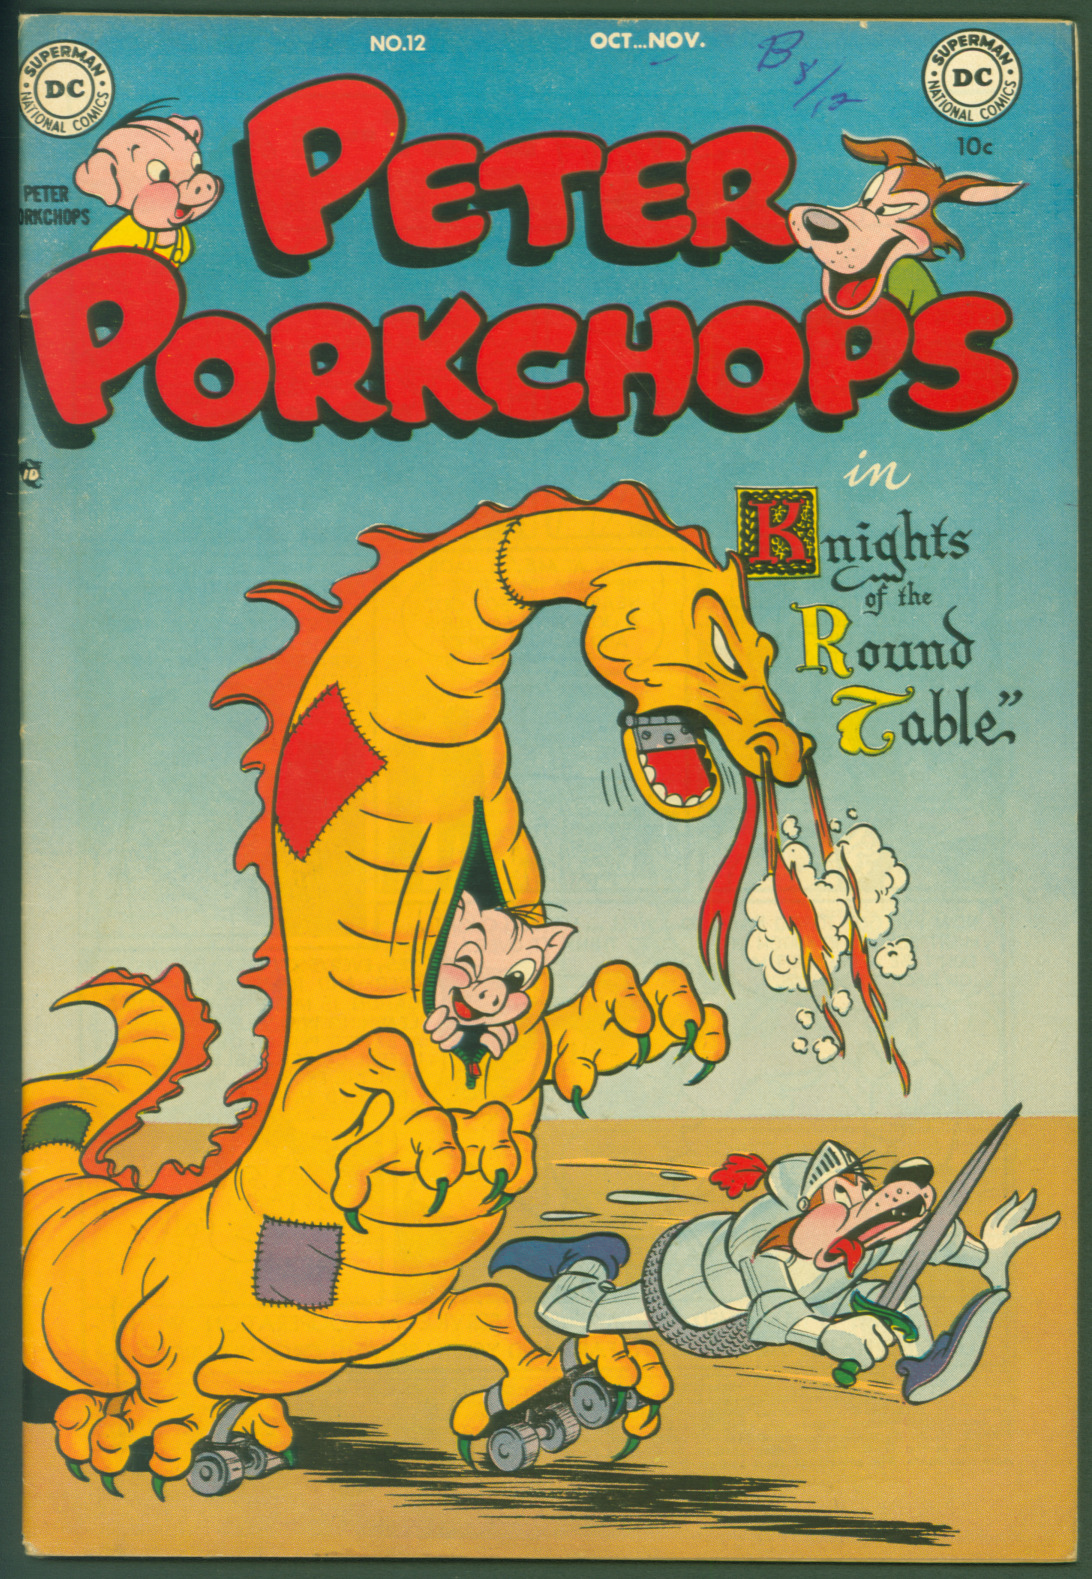 VTG 1951 Golden Age DC Comics Peter Porkchops #12 F/VF Dragon Cover